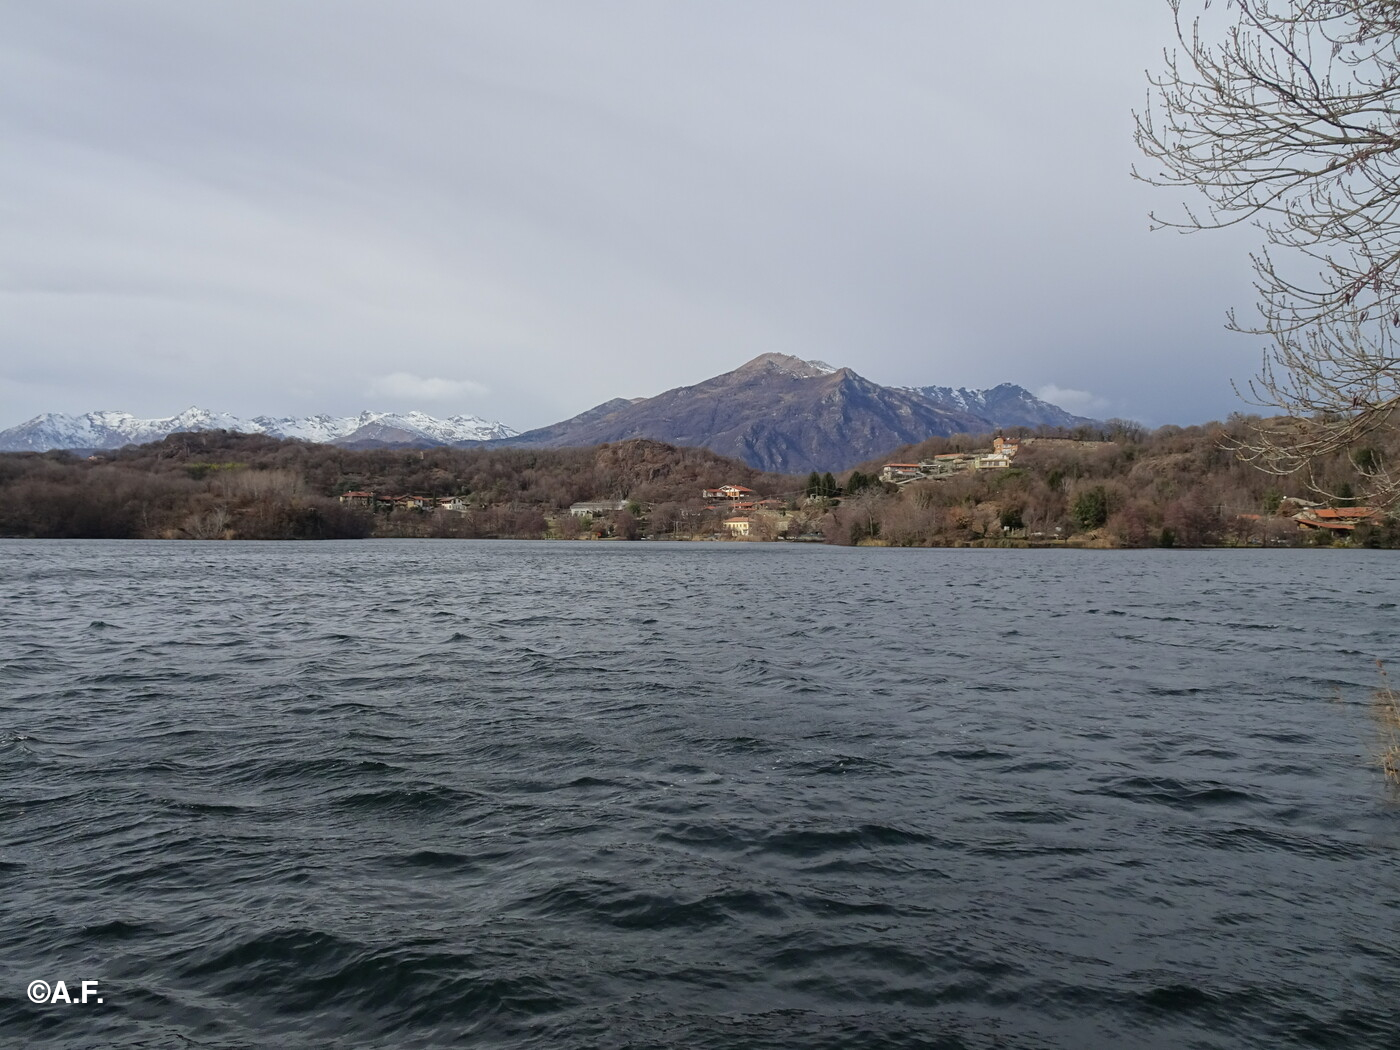 Il Lago Sirio e gli ultimi contrafforti delle Alpi Graie